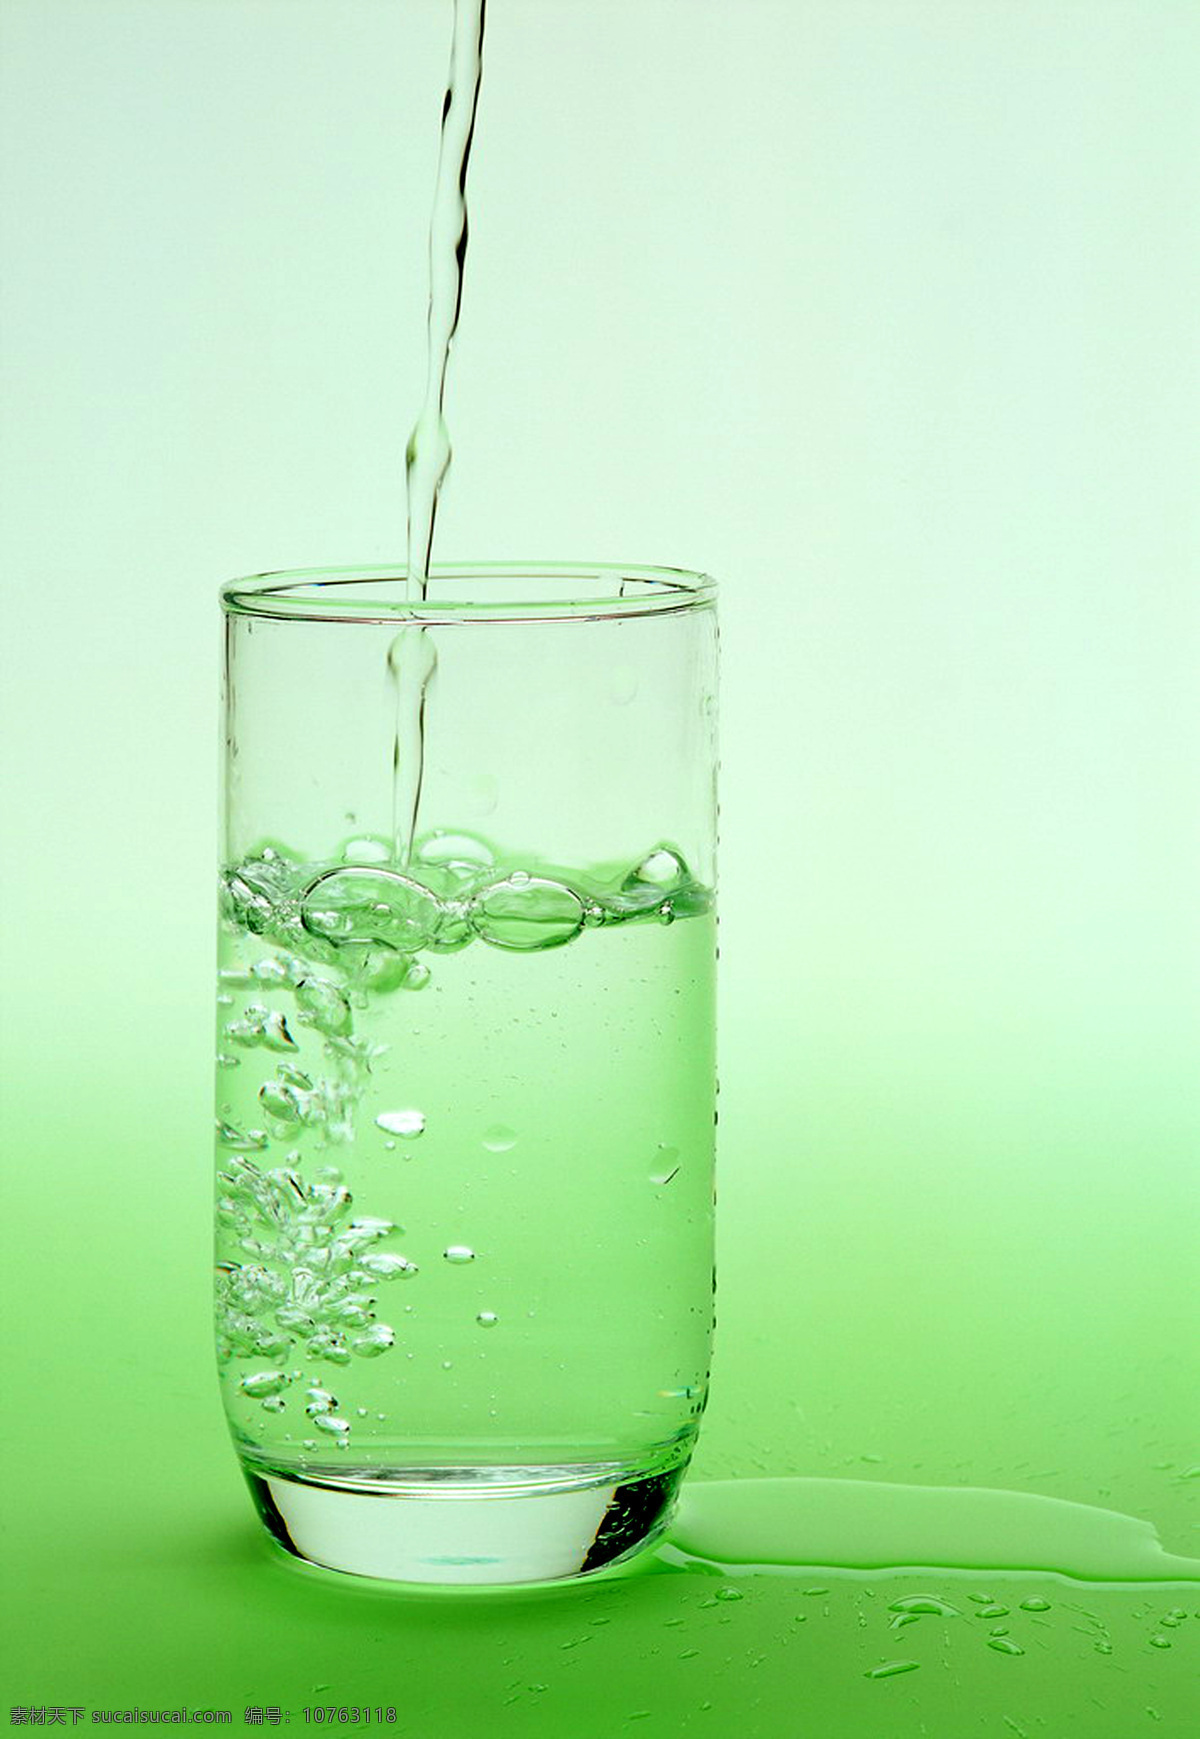 透明 玻璃杯 绿色 清凉 气泡 水珠 玻璃 饮料 薄荷 流水 生活百科 生活素材 摄影图库 300